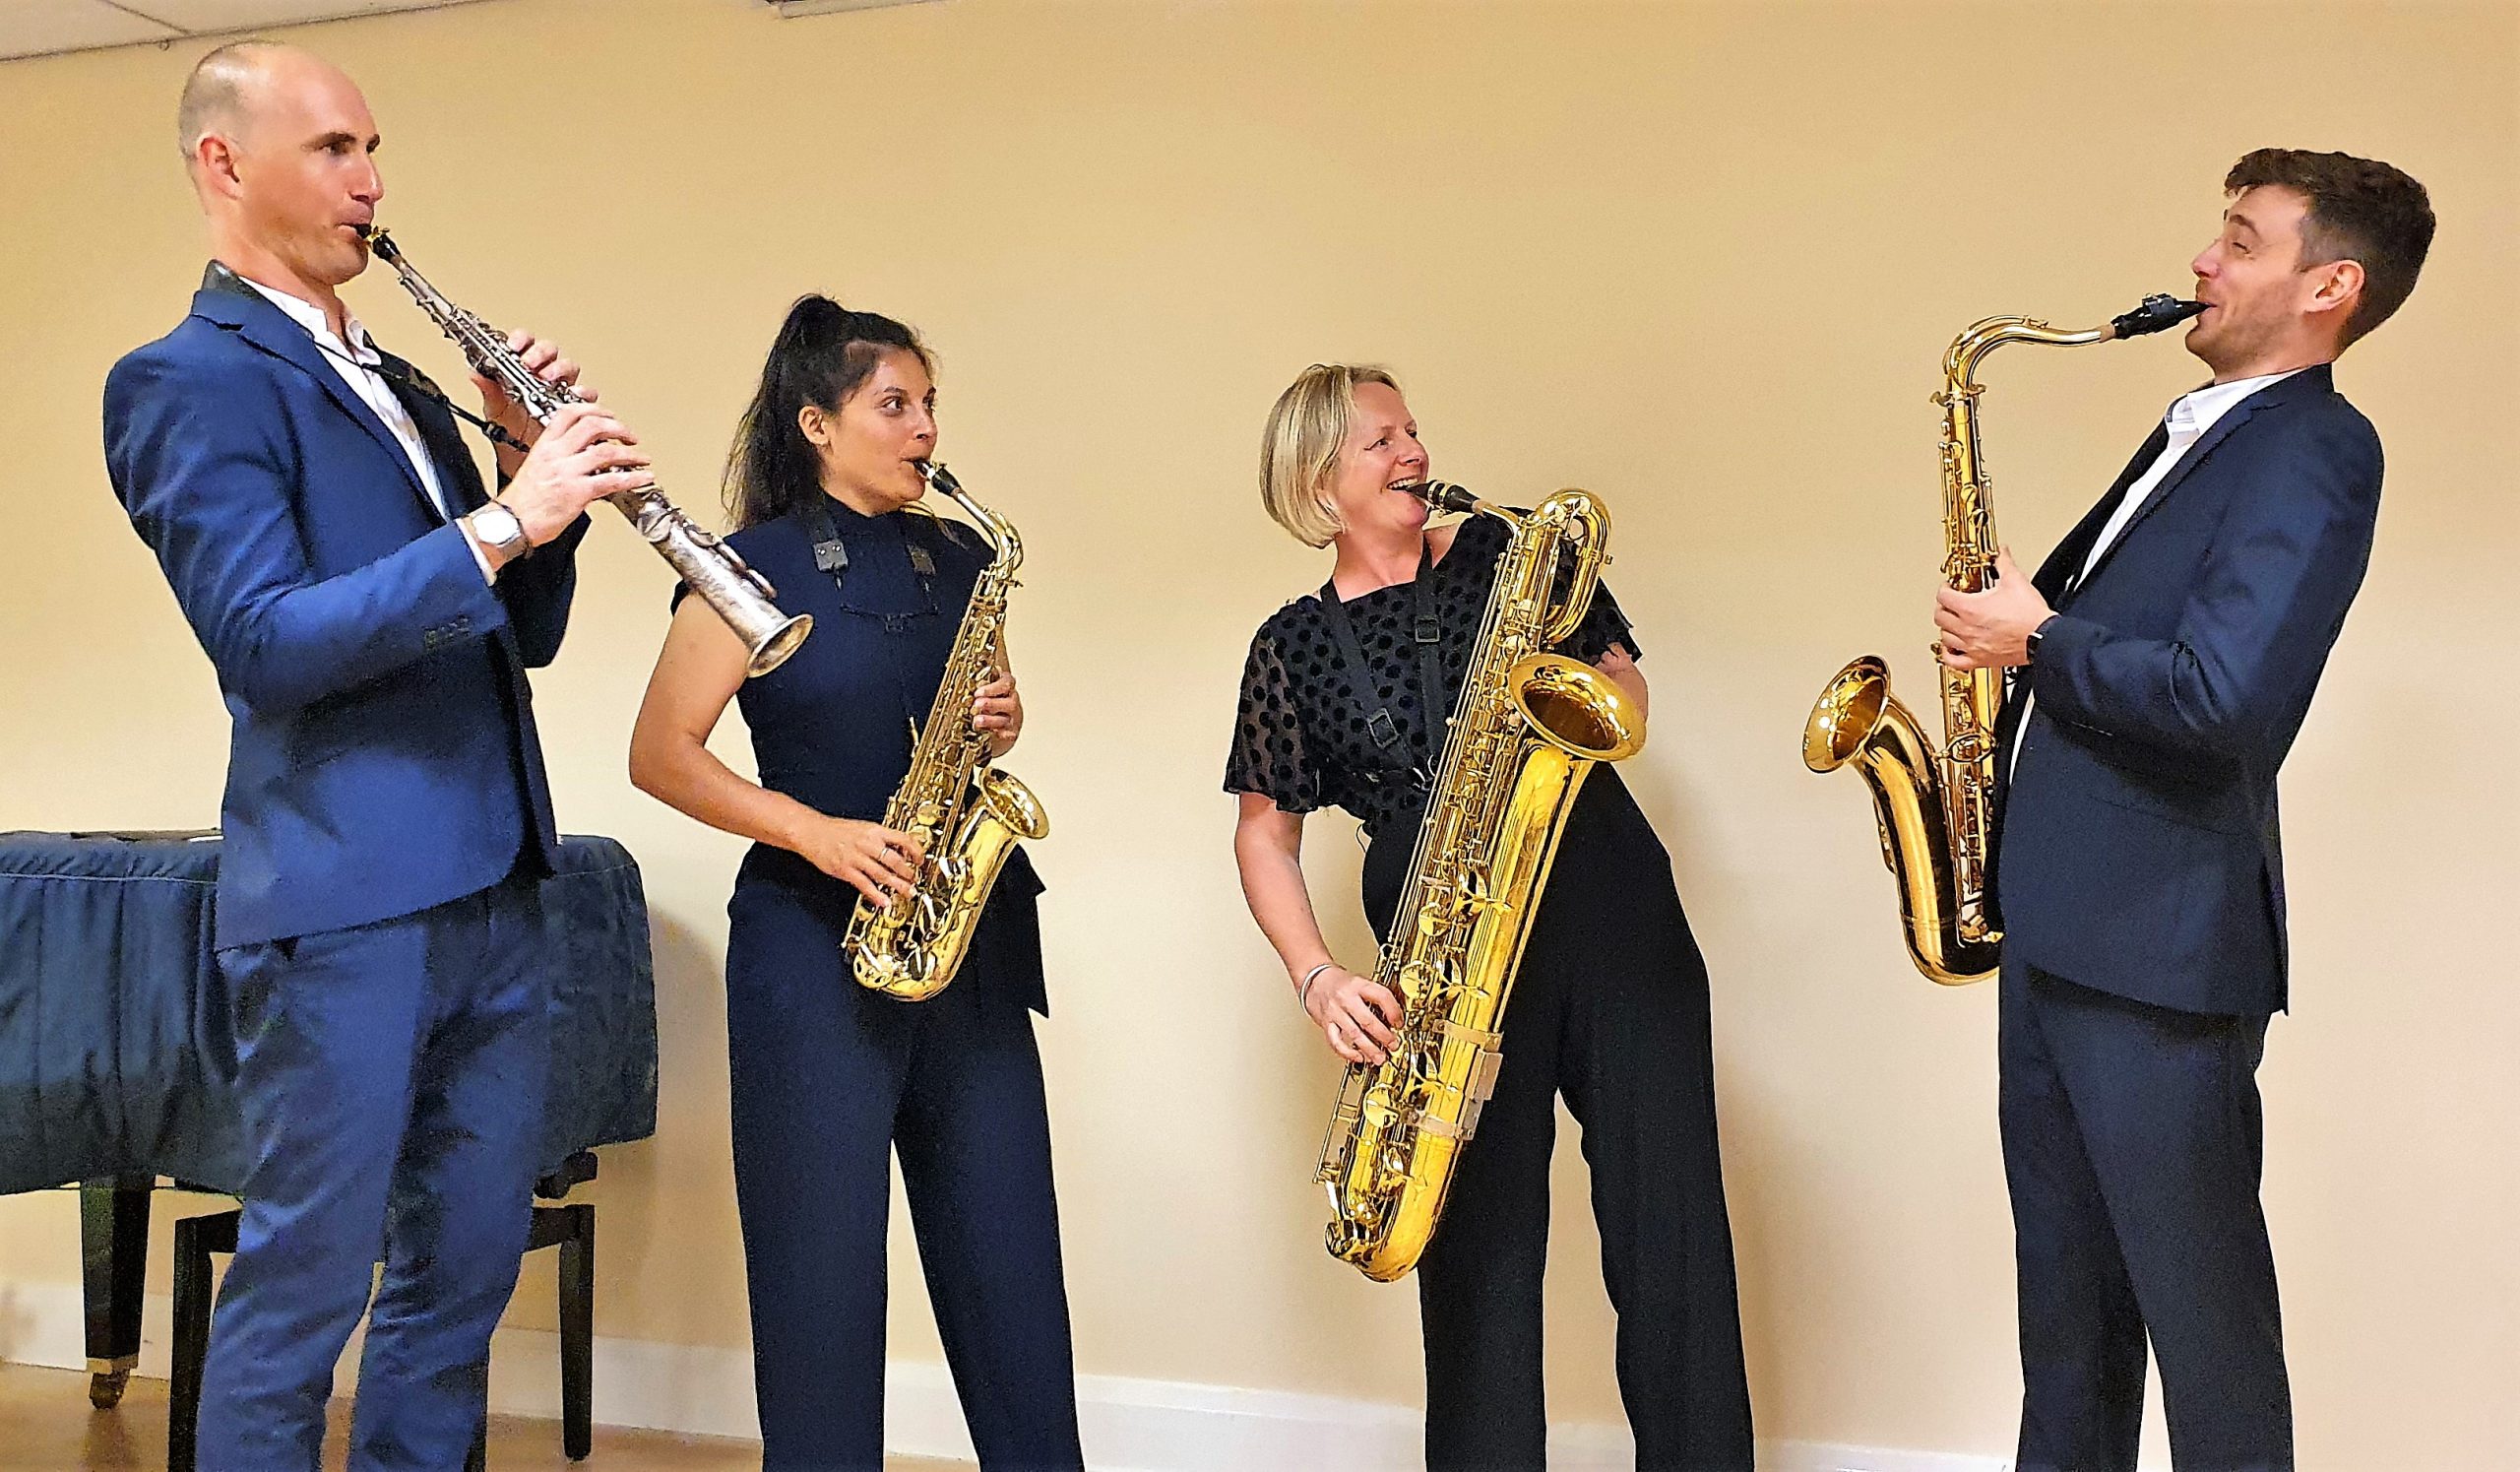 The Ferio Saxophone Quartet 19.8.21